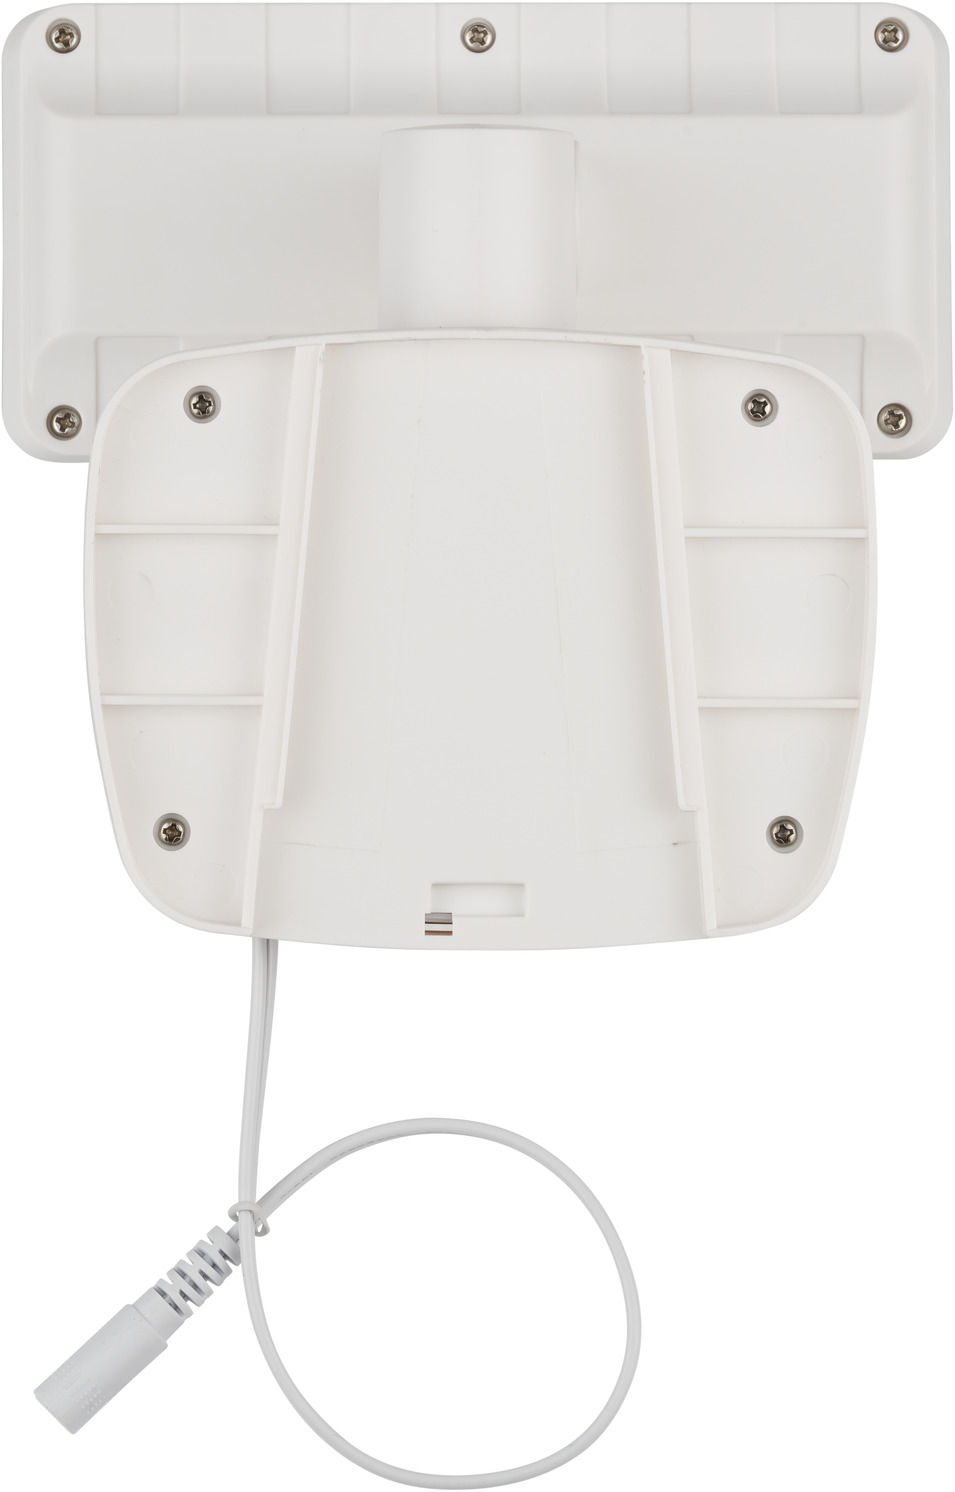 Solar LED Light SOL 800 detector motion brennenstuhl® IP44 white with | infrared